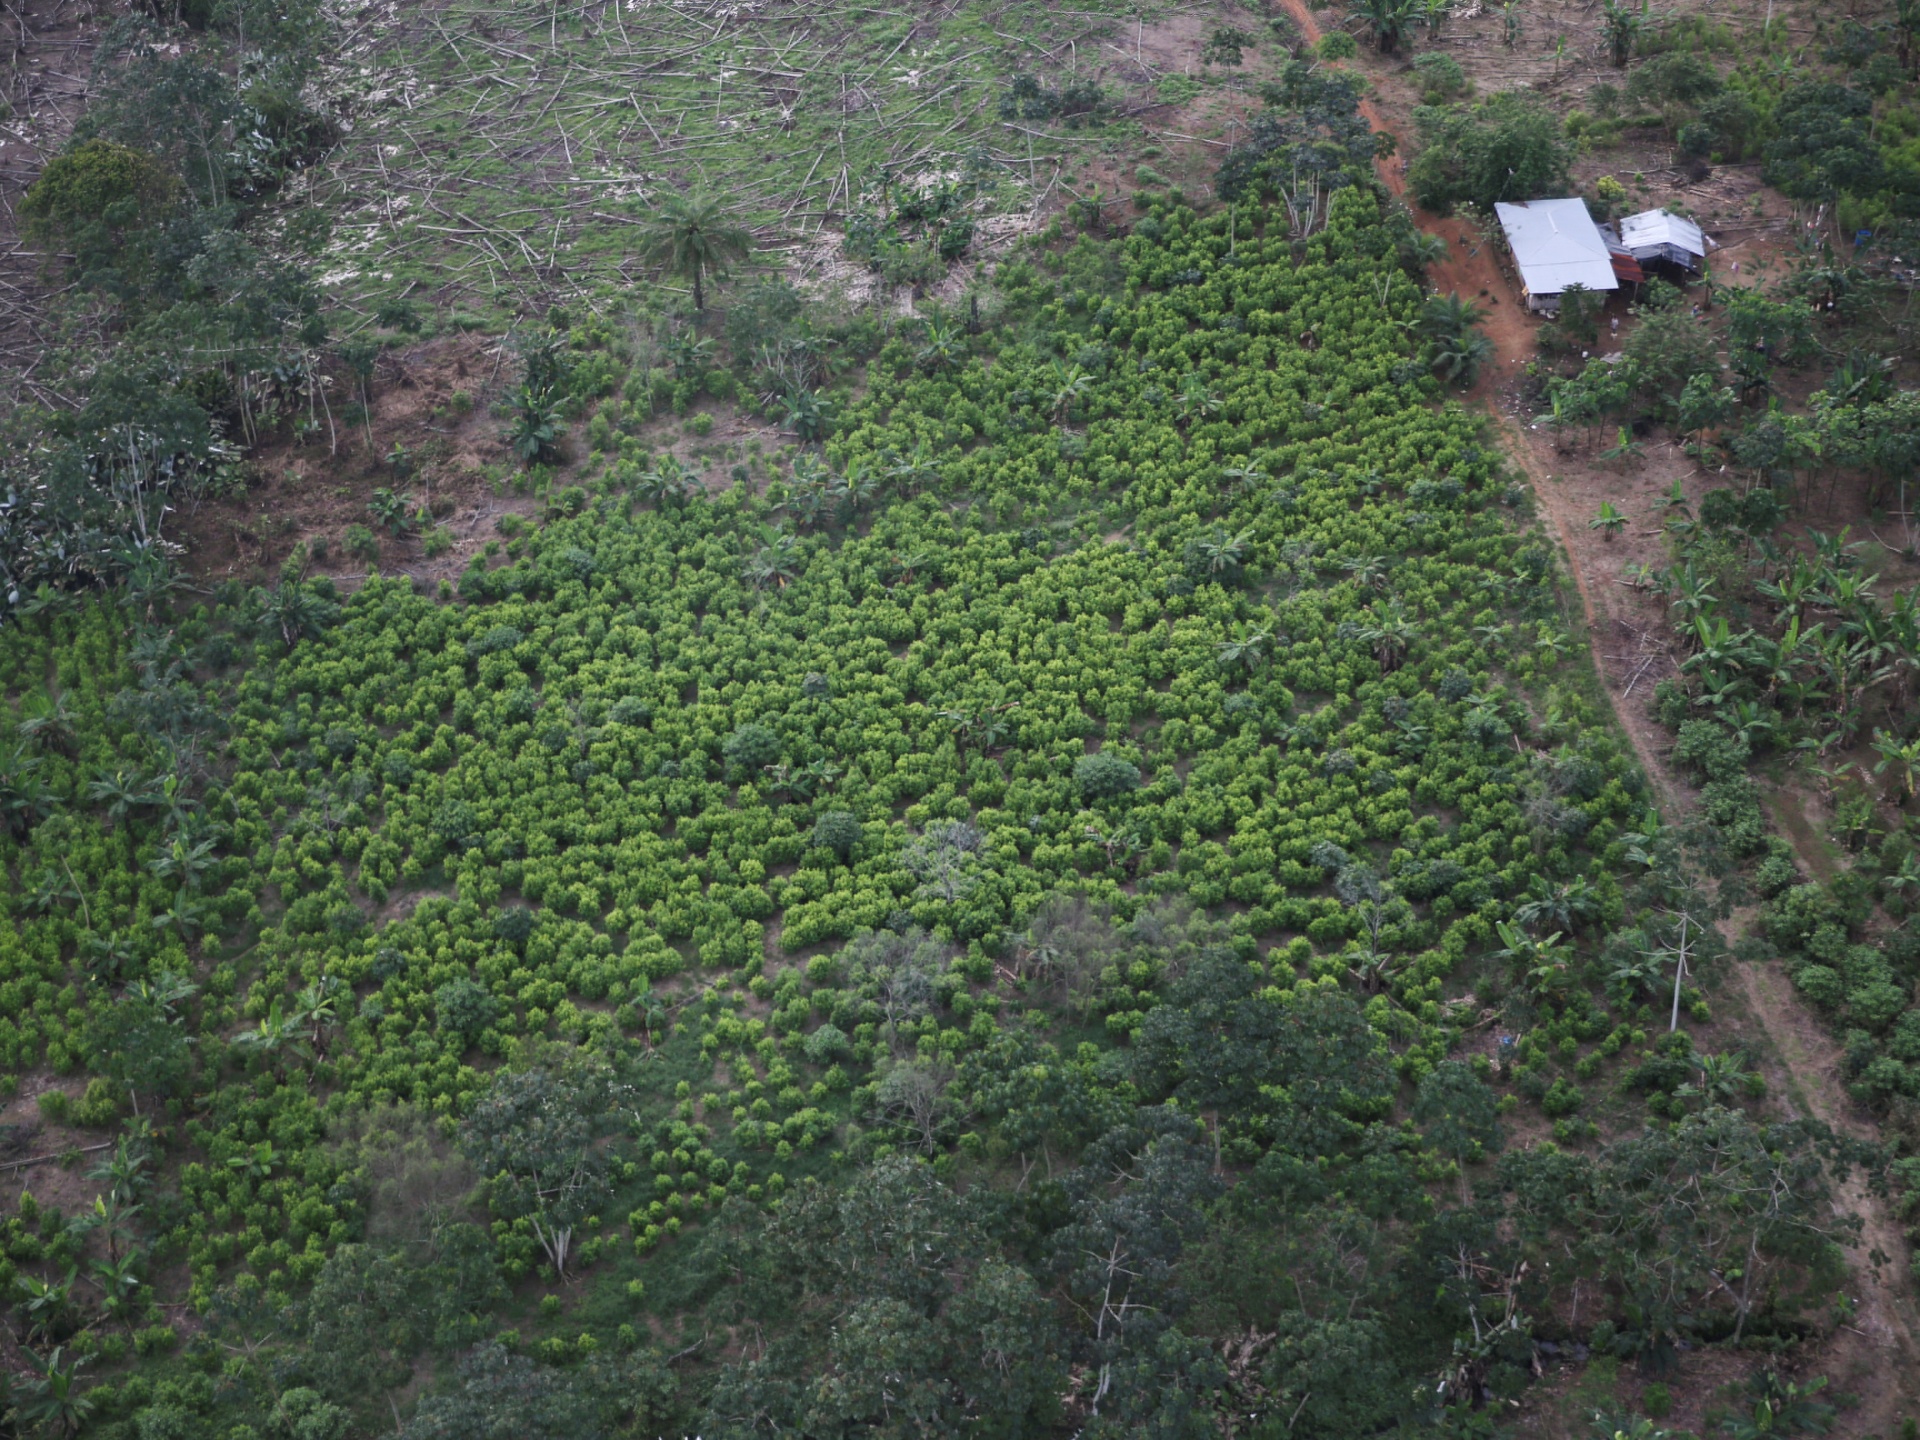 Colombia’s coca crops grew to ‘historic levels’ last year: UN